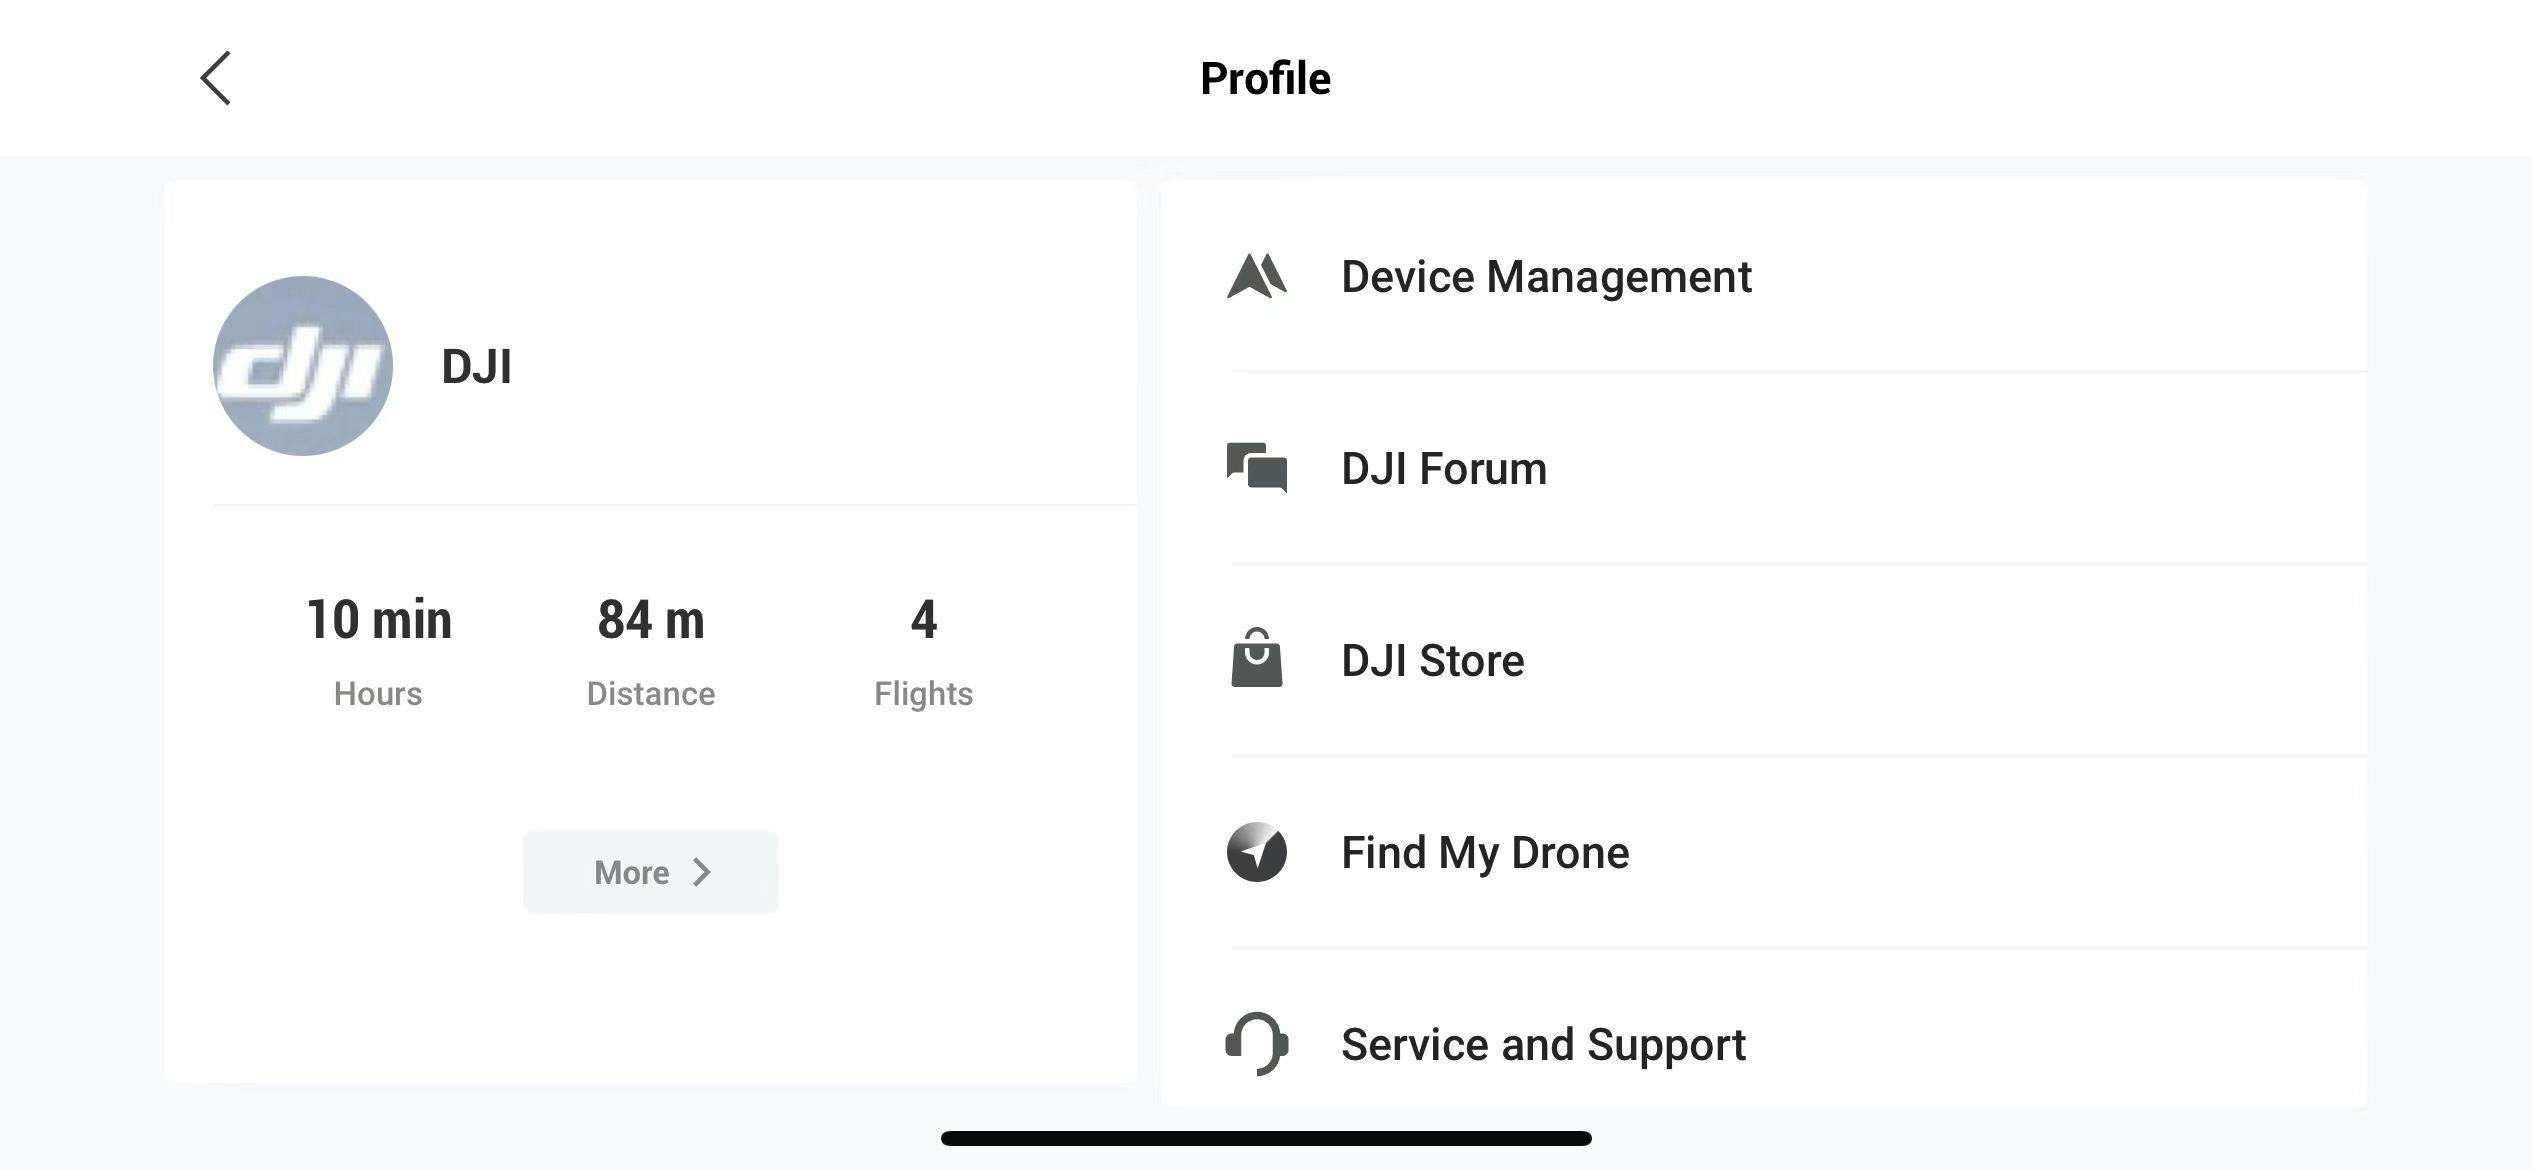 En skärmdump av en DJI-profil visar användarens flygtid (10 min), flygdistans (84 m) och antal flygningar (4). Menyn innehåller: "Device Management", "DJI Forum", "DJI Store", "Find My Drone" och "Service and Support".